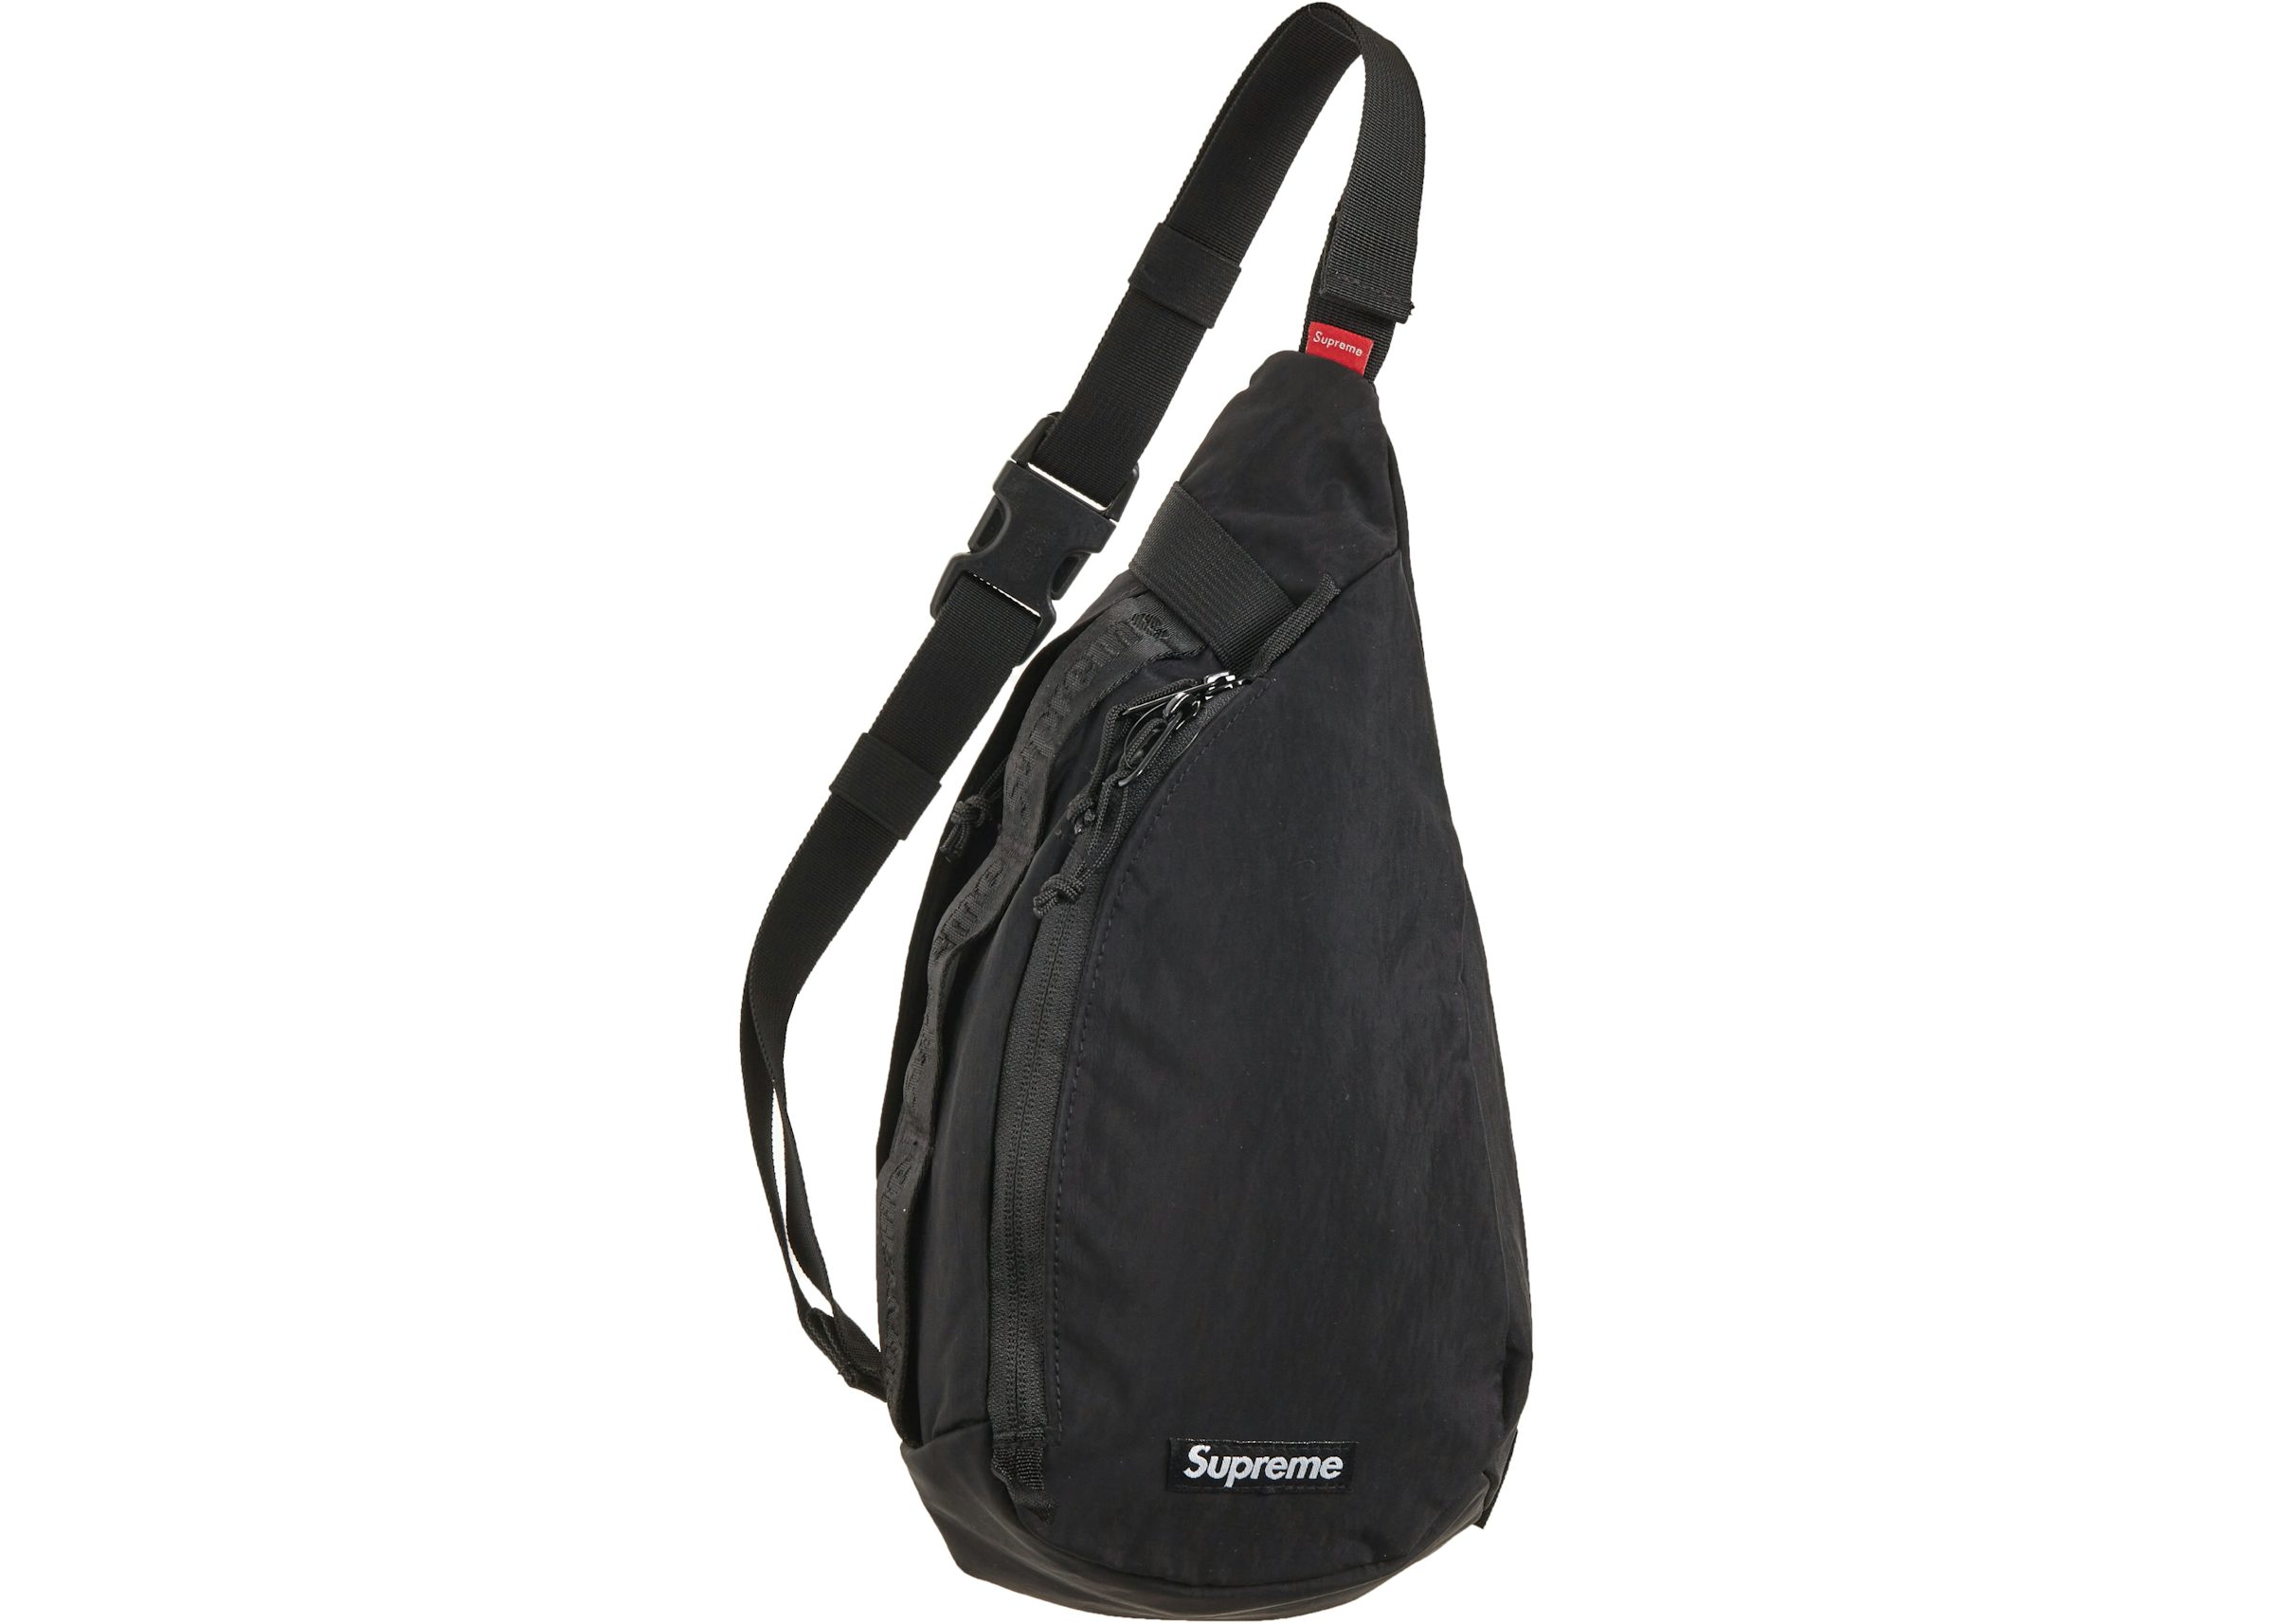 Supreme Sling Bag Black - FW20 - US